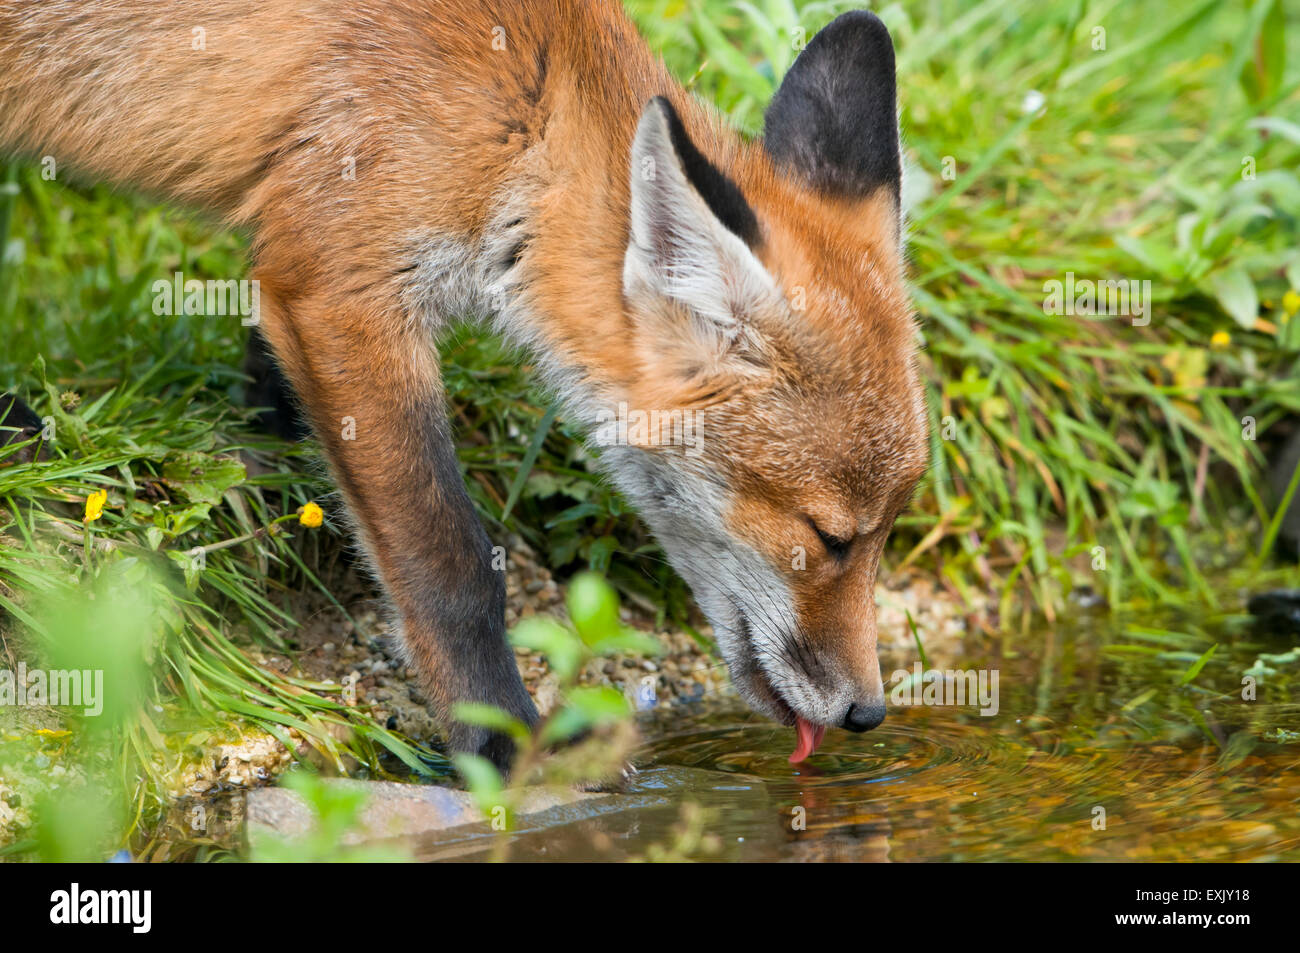 Una volpe rossa cub (Vulpes vulpes vulpes) drink da un suburban laghetto in giardino durante il giorno. Hastings, East Sussex, Regno Unito Foto Stock